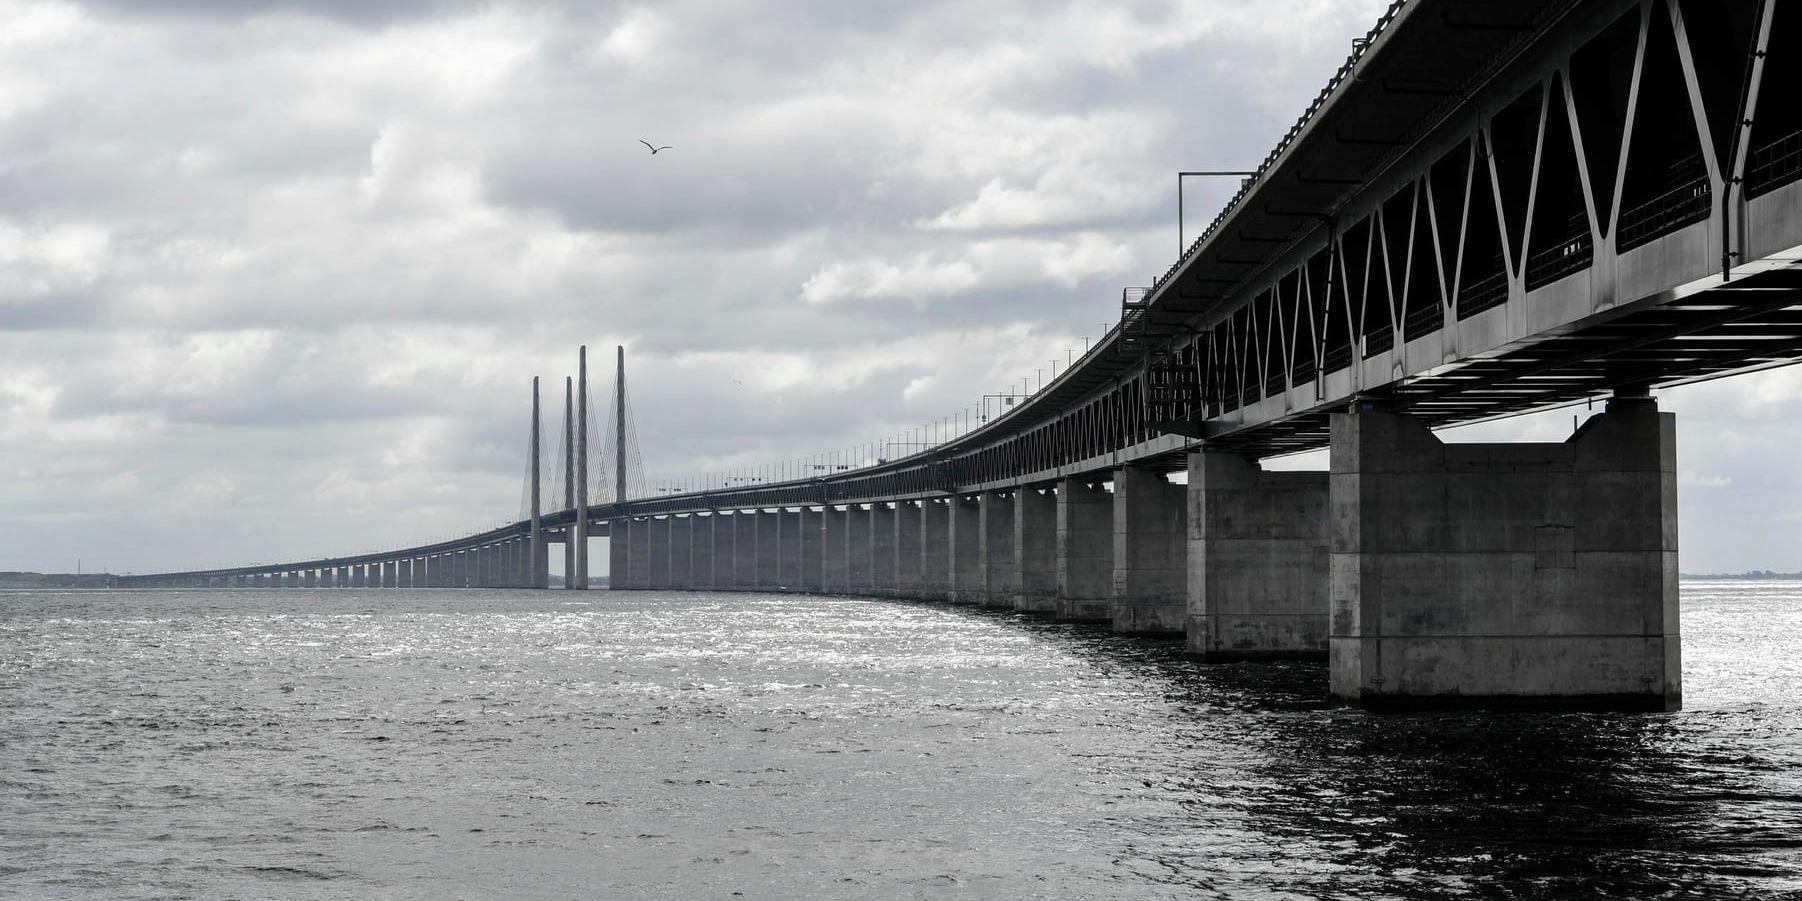 Vindkänsliga fordon rekommenderas att hålla sig borta från Öresundsbron. Arkivbild.